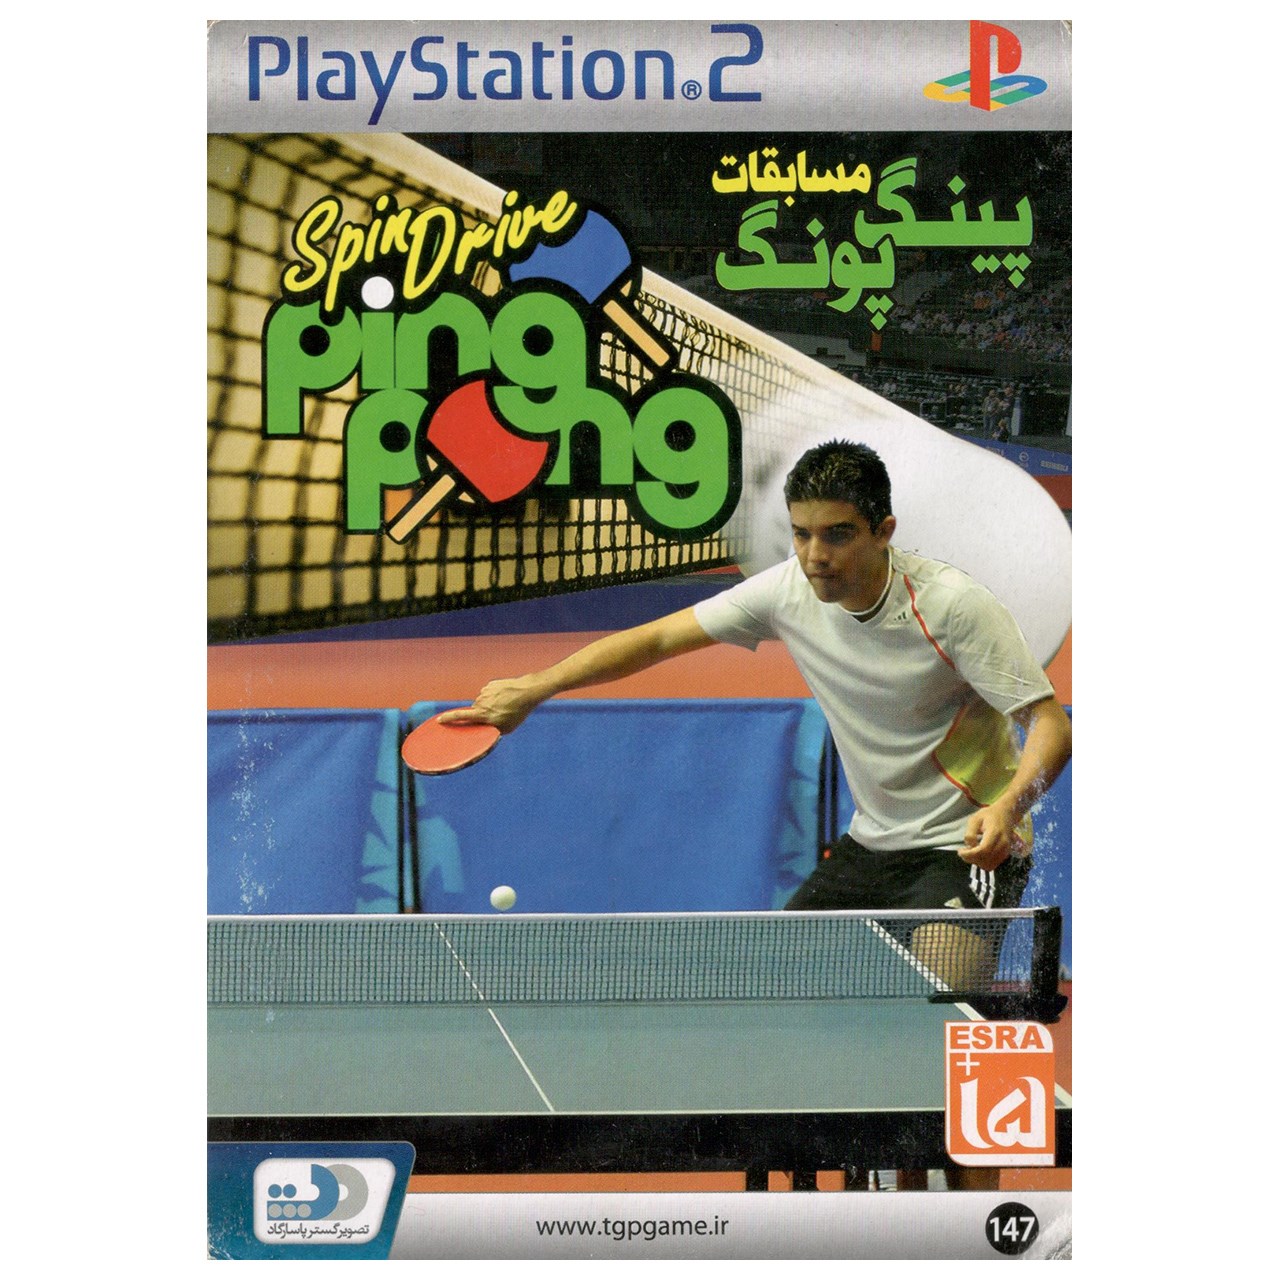 بازی پینگ پنگ مخصوص پلی استیشن 2